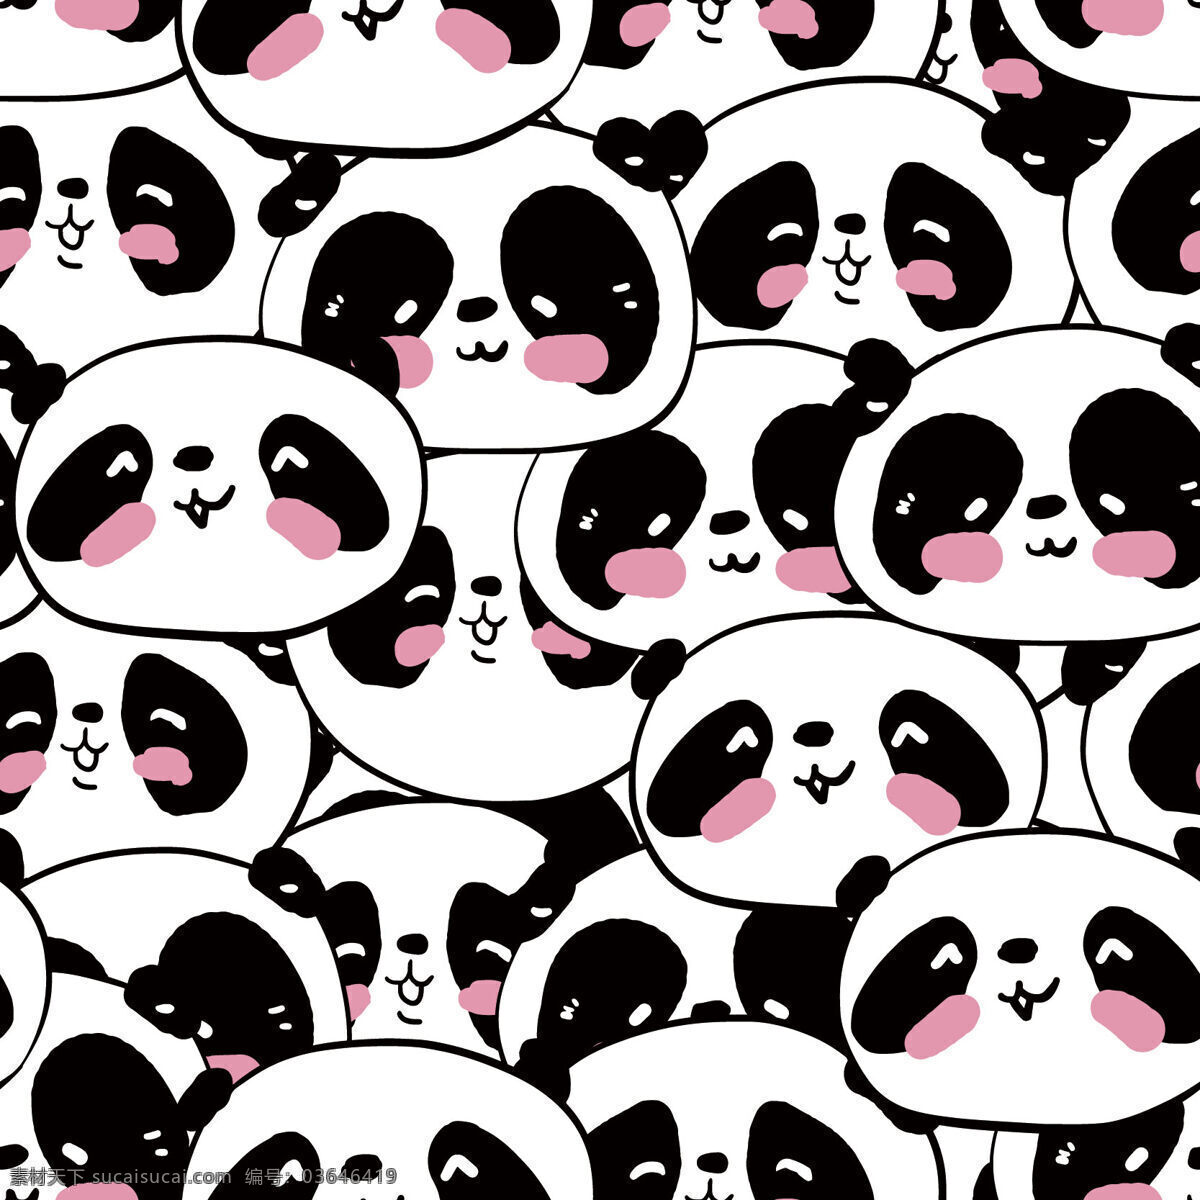 可爱 熊猫 大头 壁纸 图案 装饰设计 壁纸图案 熊猫图案 浅紫色腮红 大头像